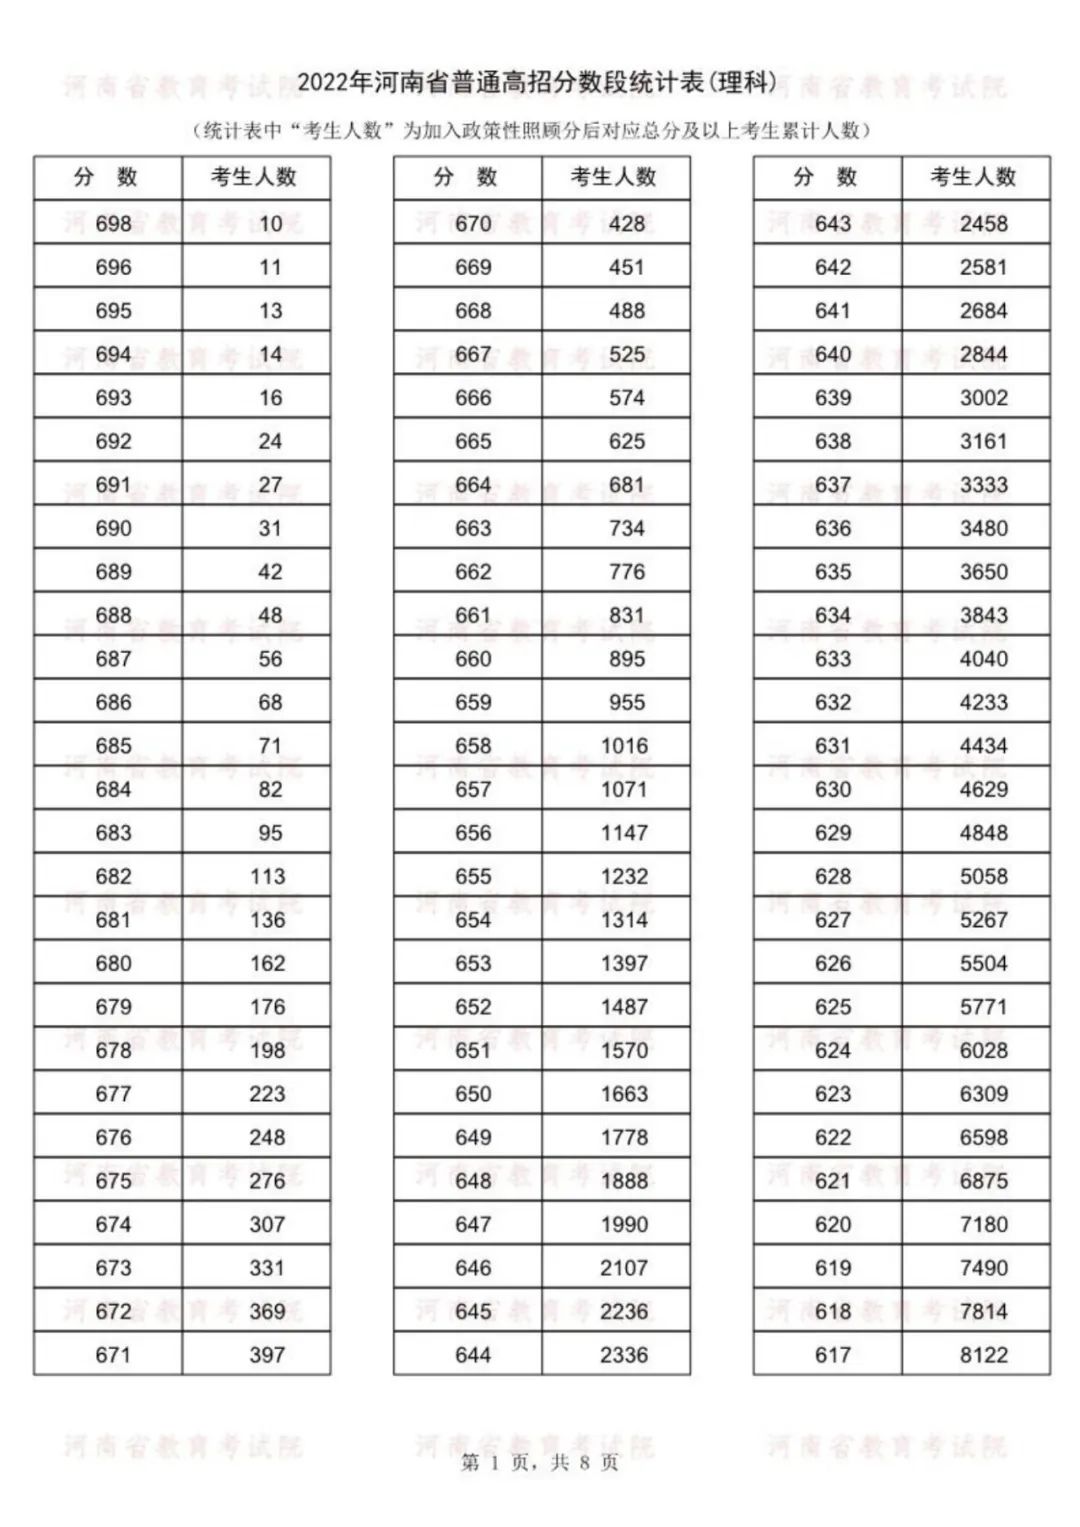 2022年河南省高考分段表